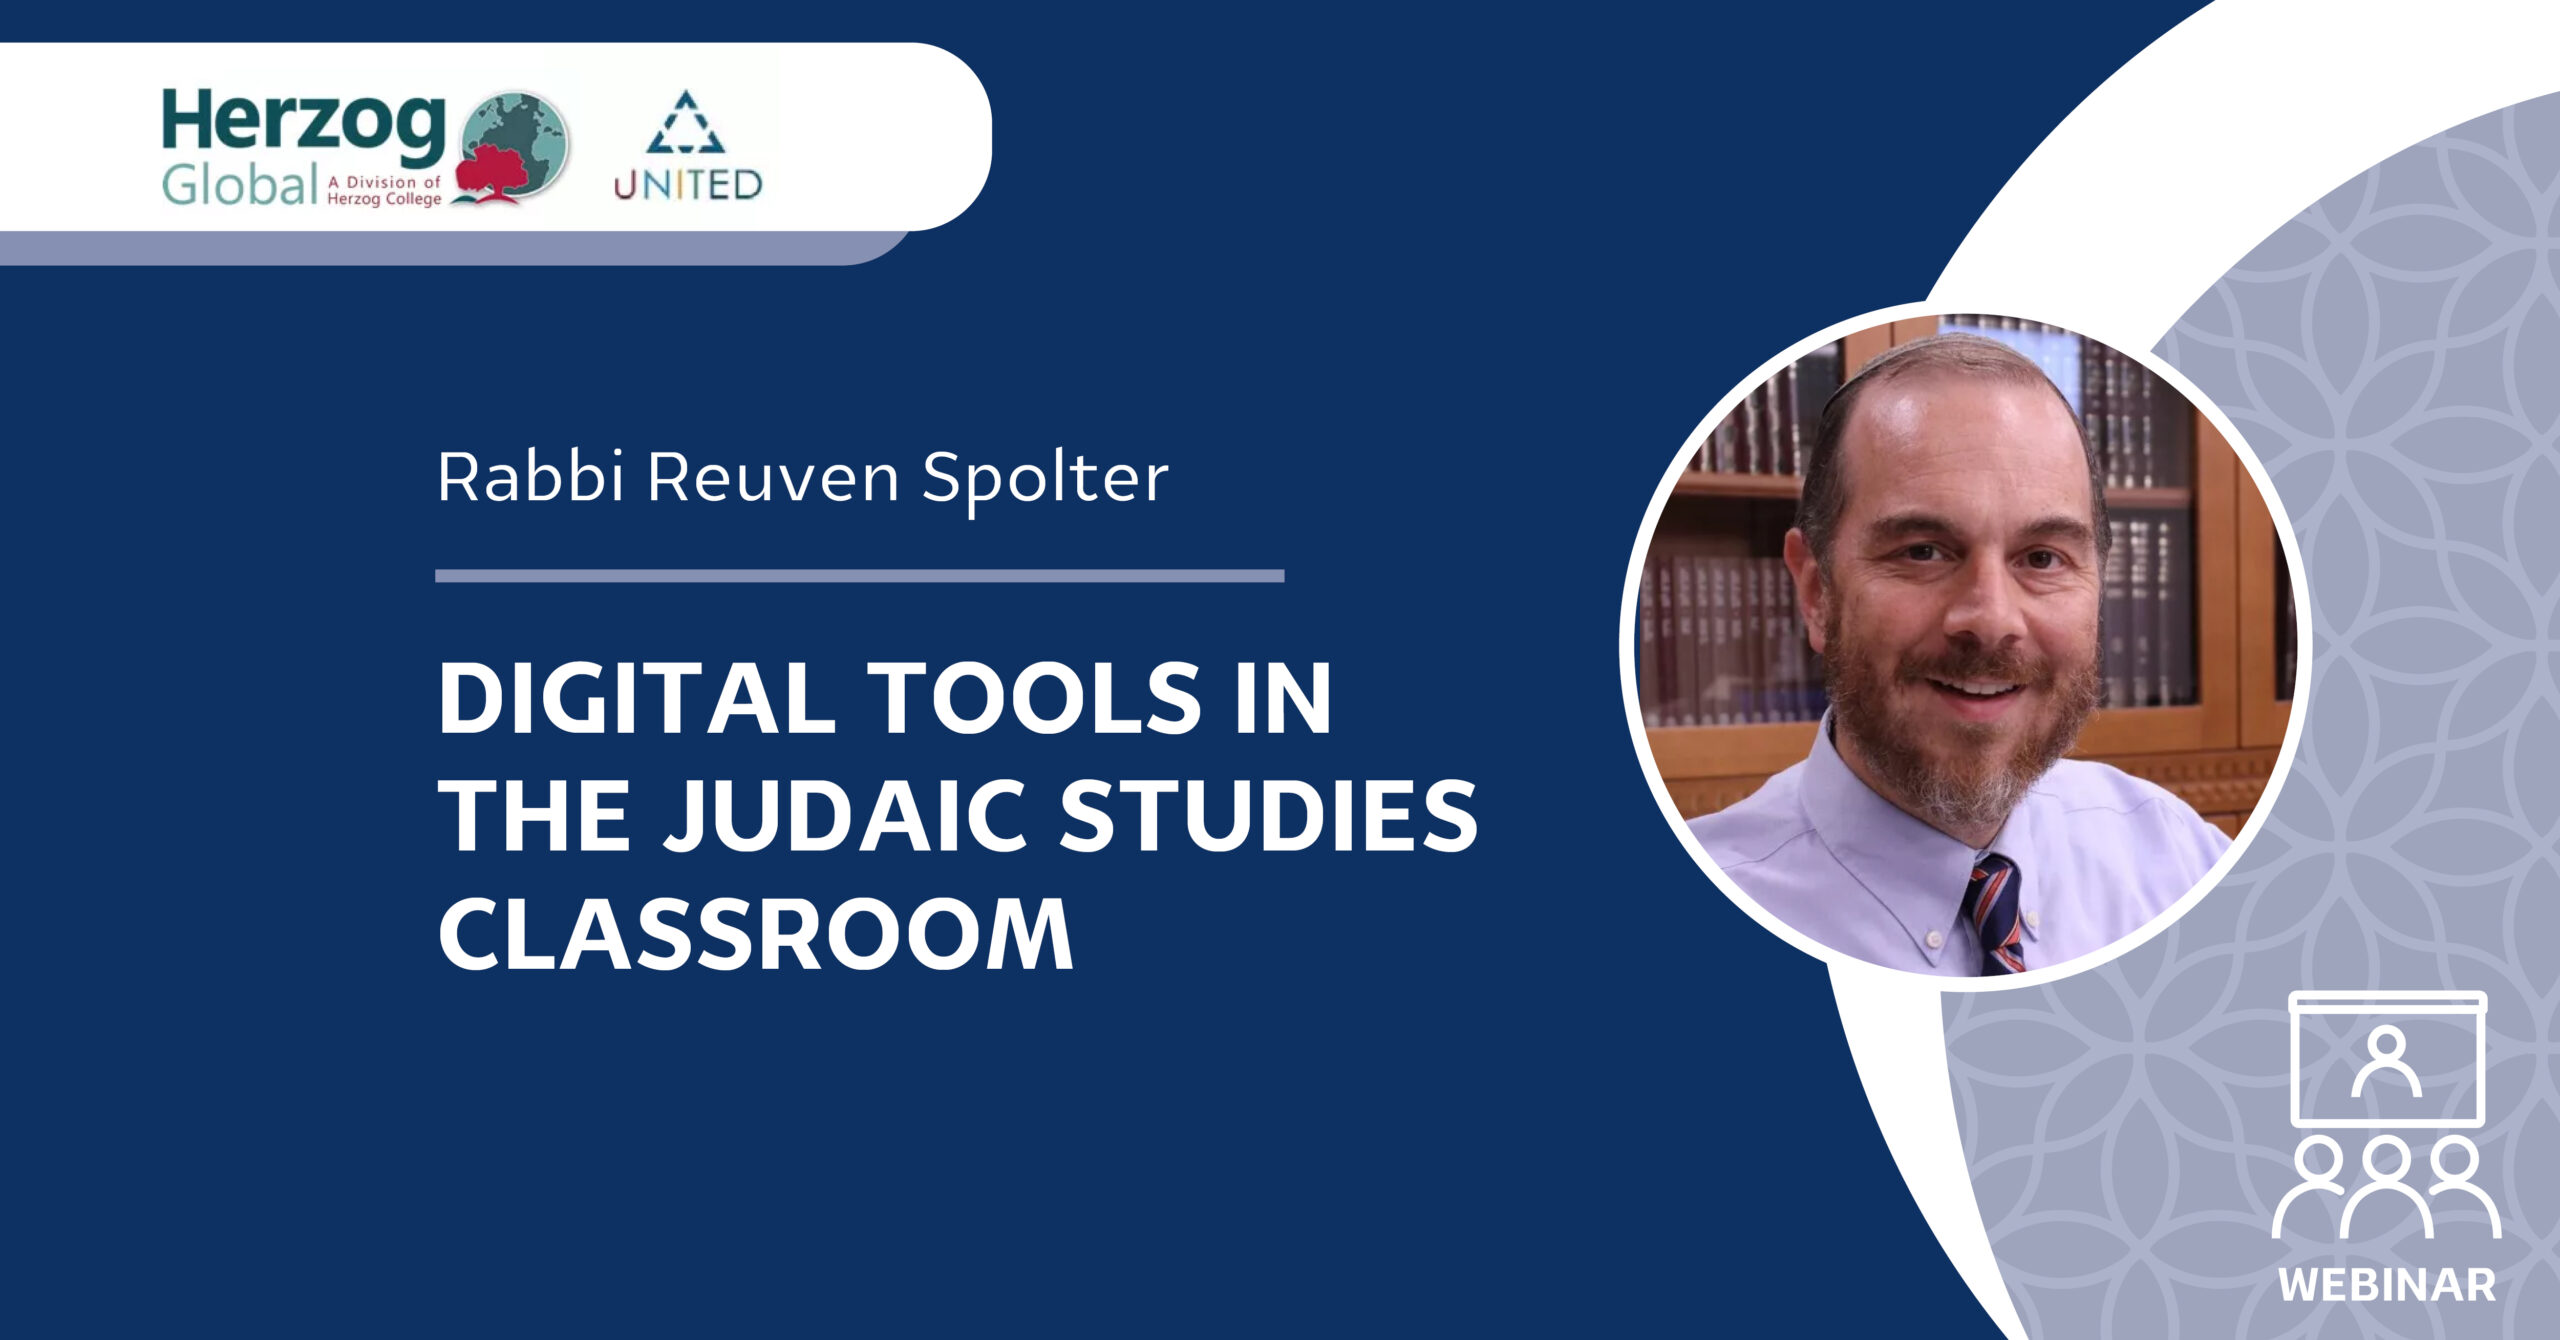 Judaic Studies Classroom